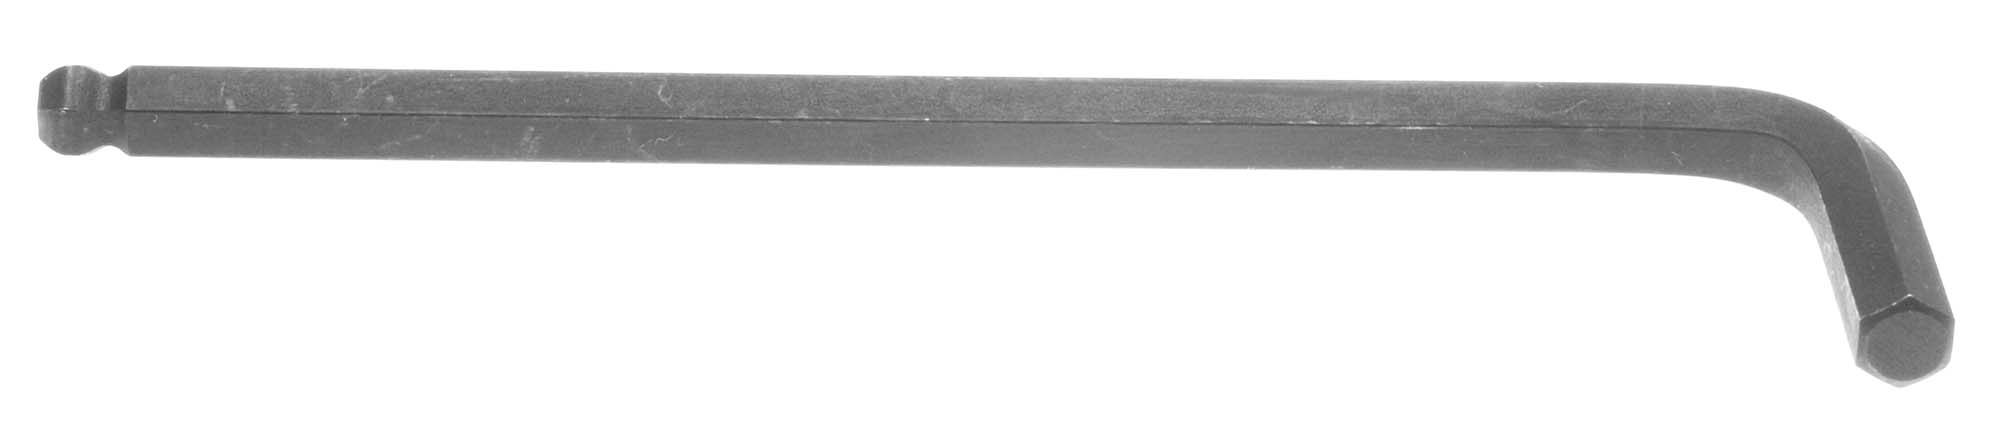 7/32" Bondhus Balldriver L-Wrench Hex Key